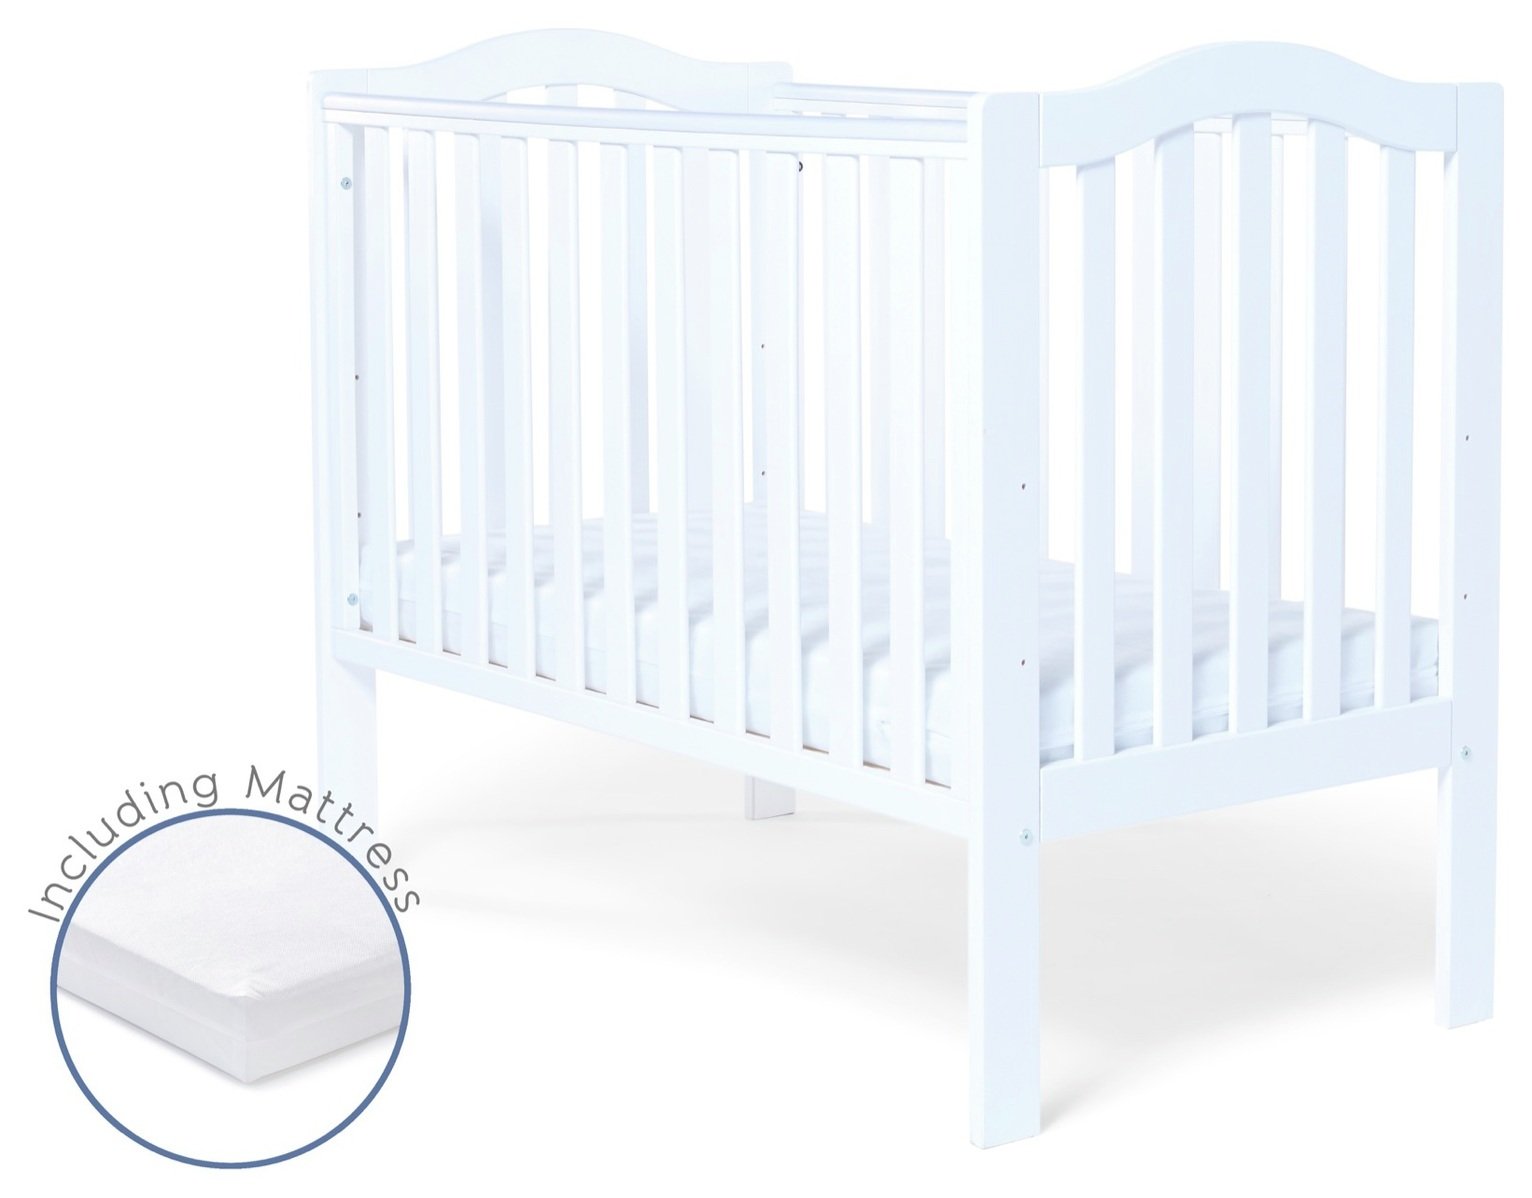 baby elegance mattress argos